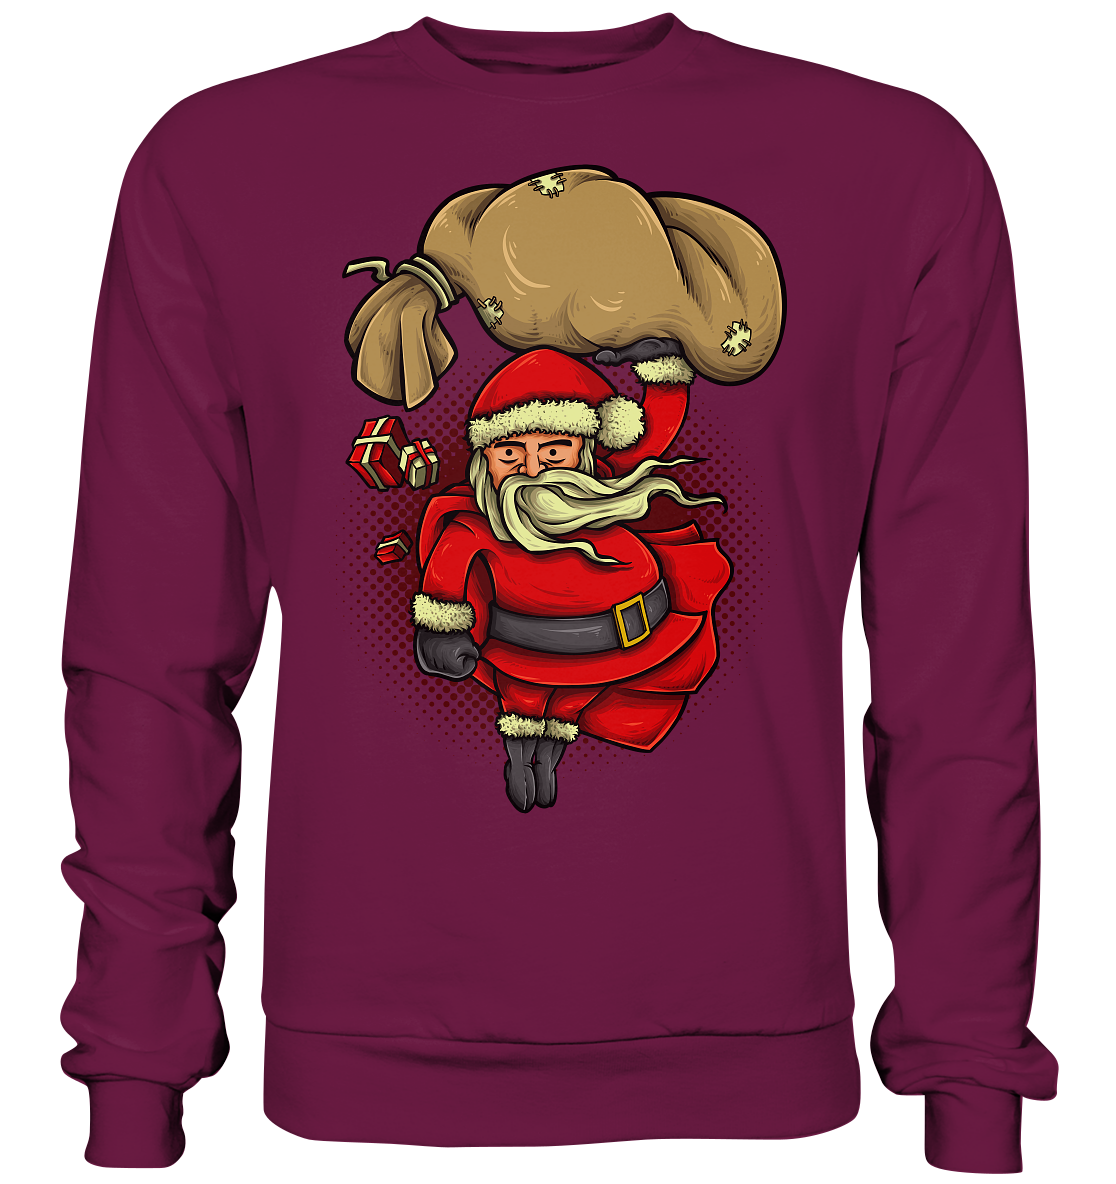 Weihnachtsmann, Santa Claus, Christmas , Super Santa - Premium Sweatshirt